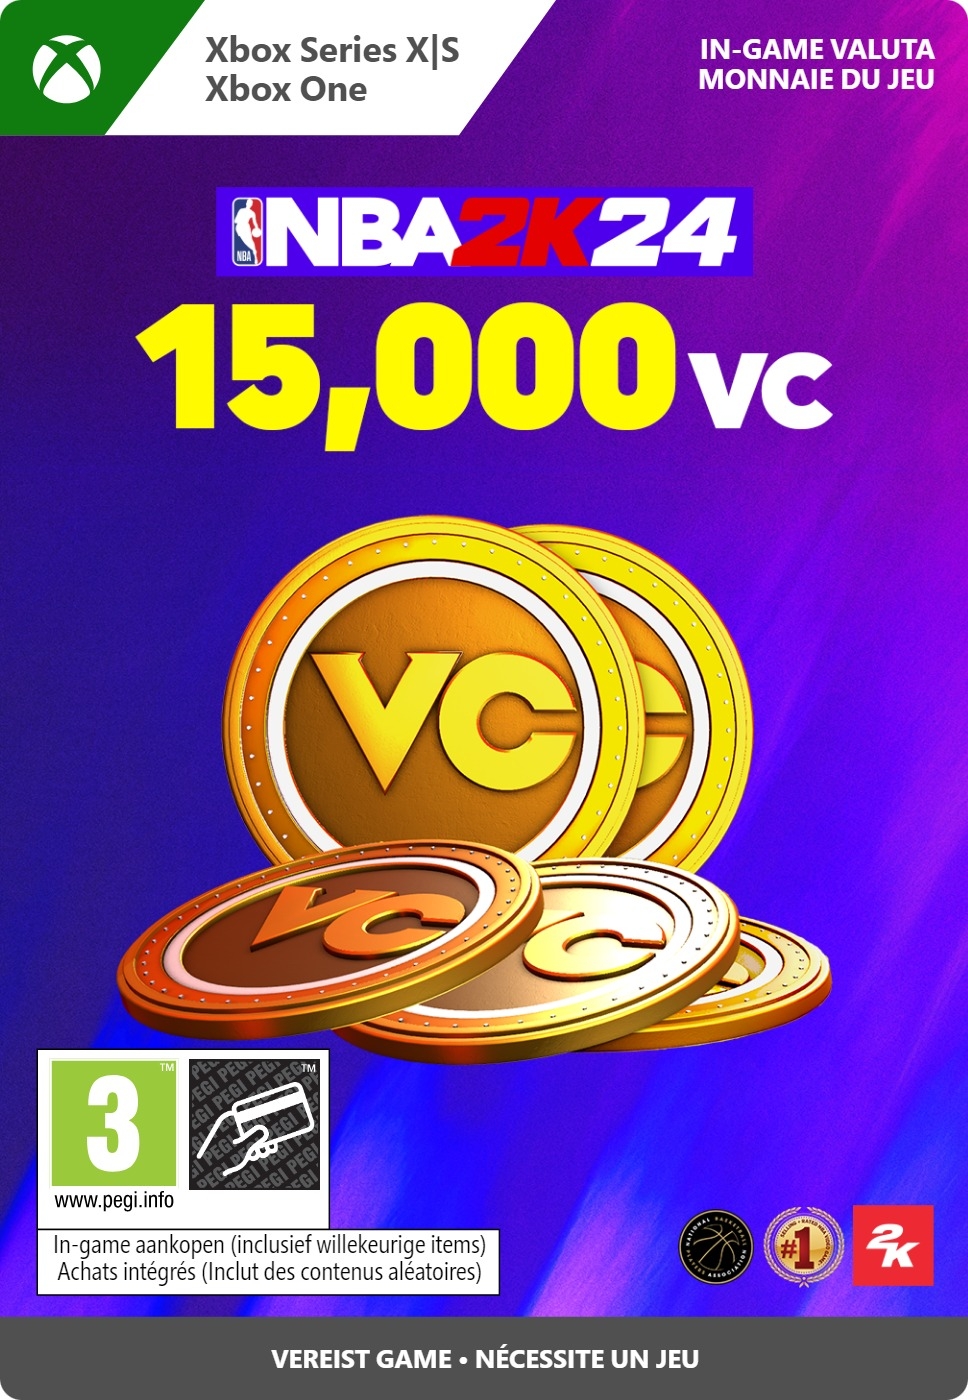 15.000 Xbox NBA 2K24 VC